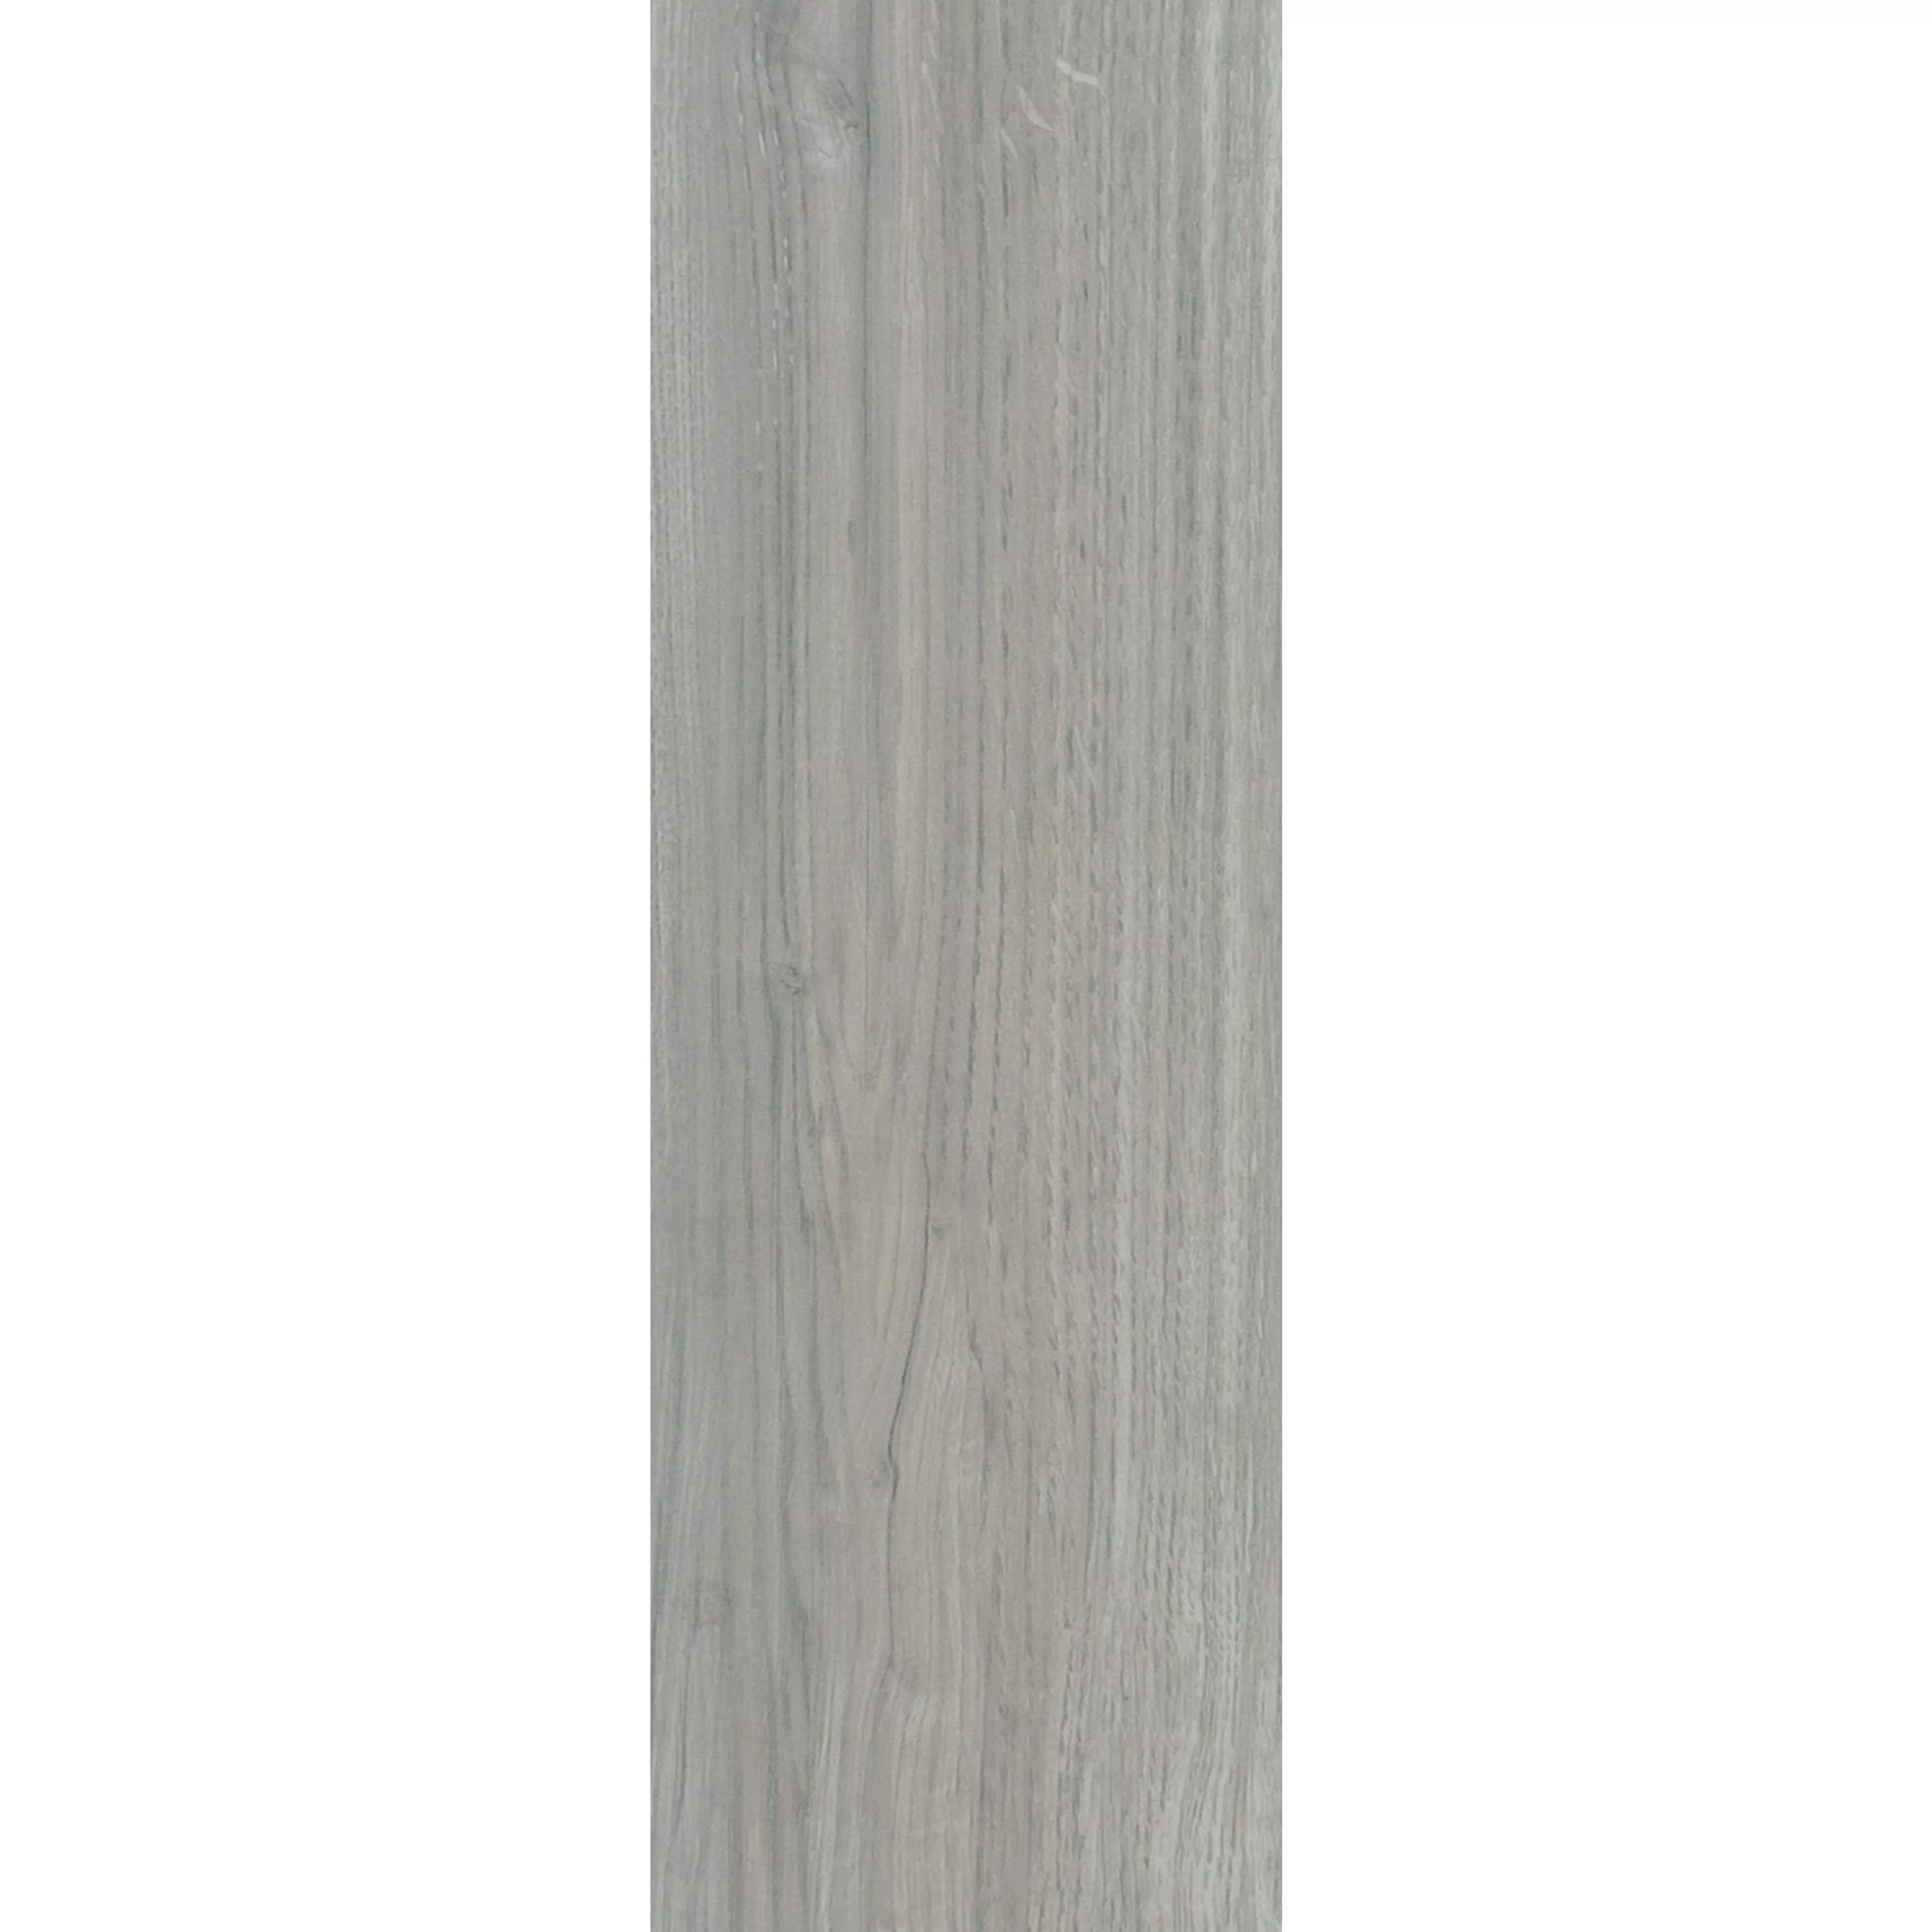 Gulvfliser Imiteret Træ Fullwood Beige 20x120cm 